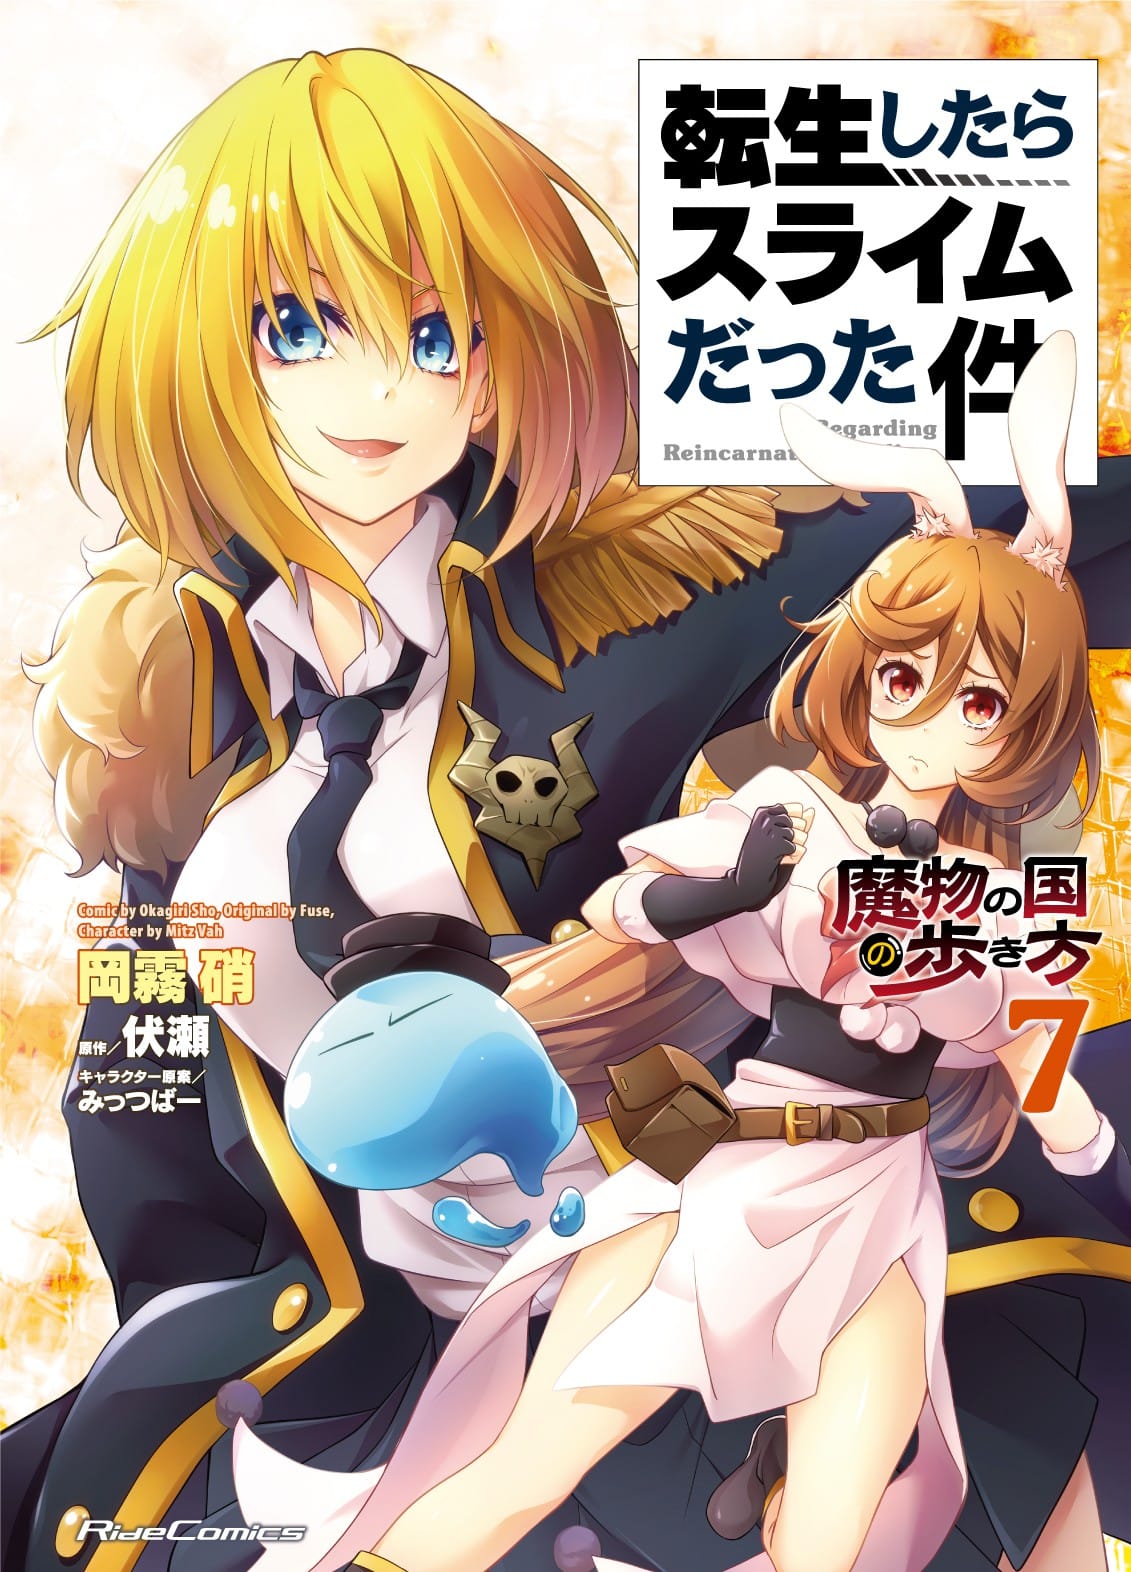 Manga Volume 22, Tensei Shitara Slime Datta Ken Wiki